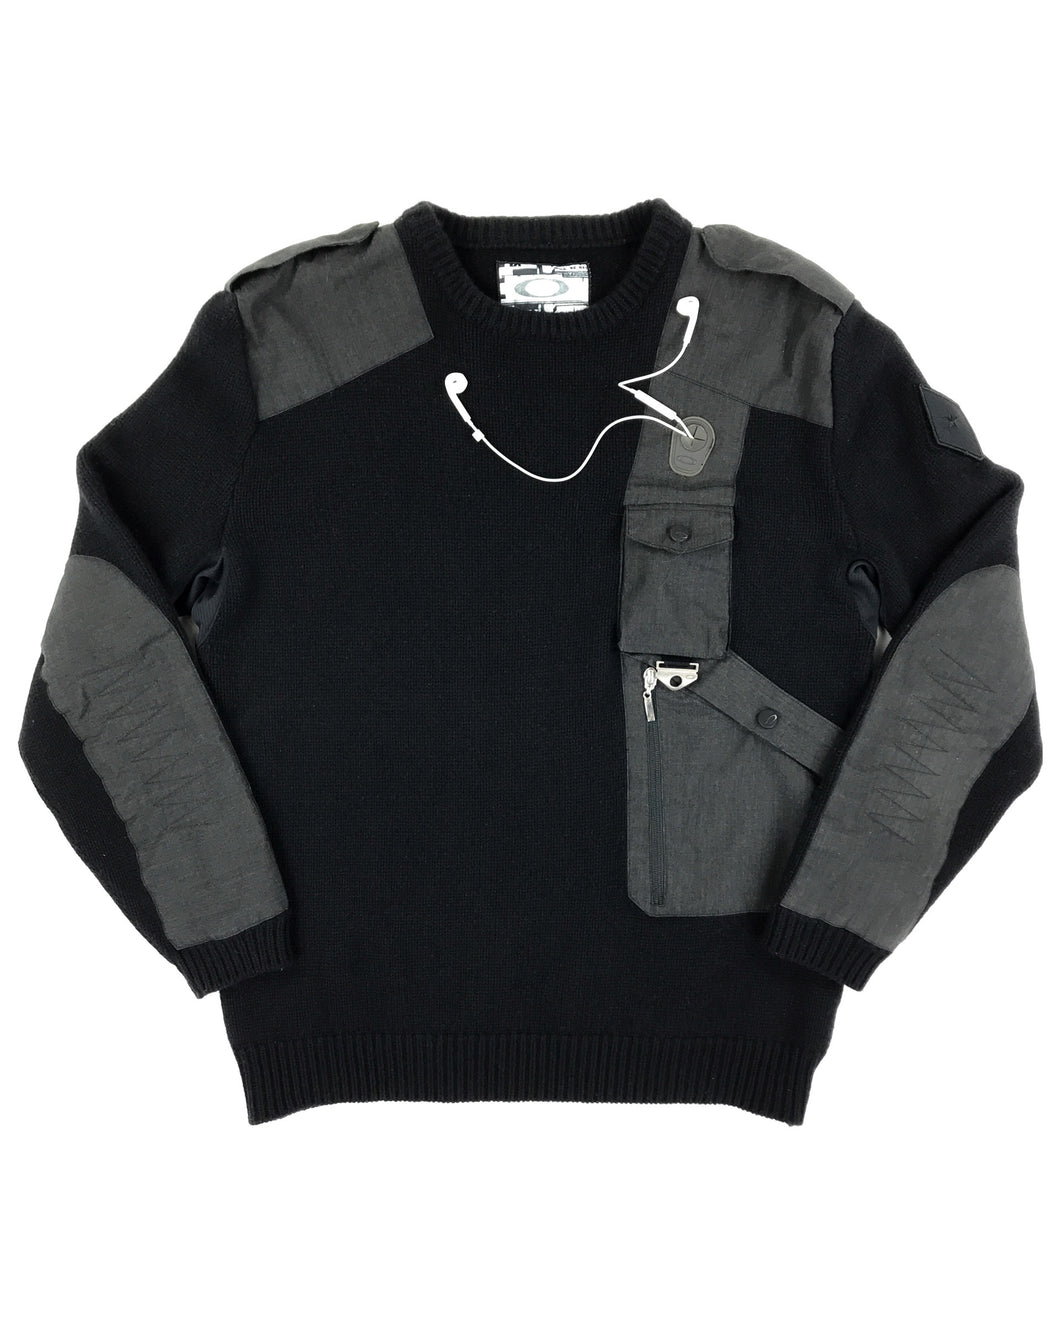 OAKLEY Asymmetrical Tactical Knit Sweater (2000’s)